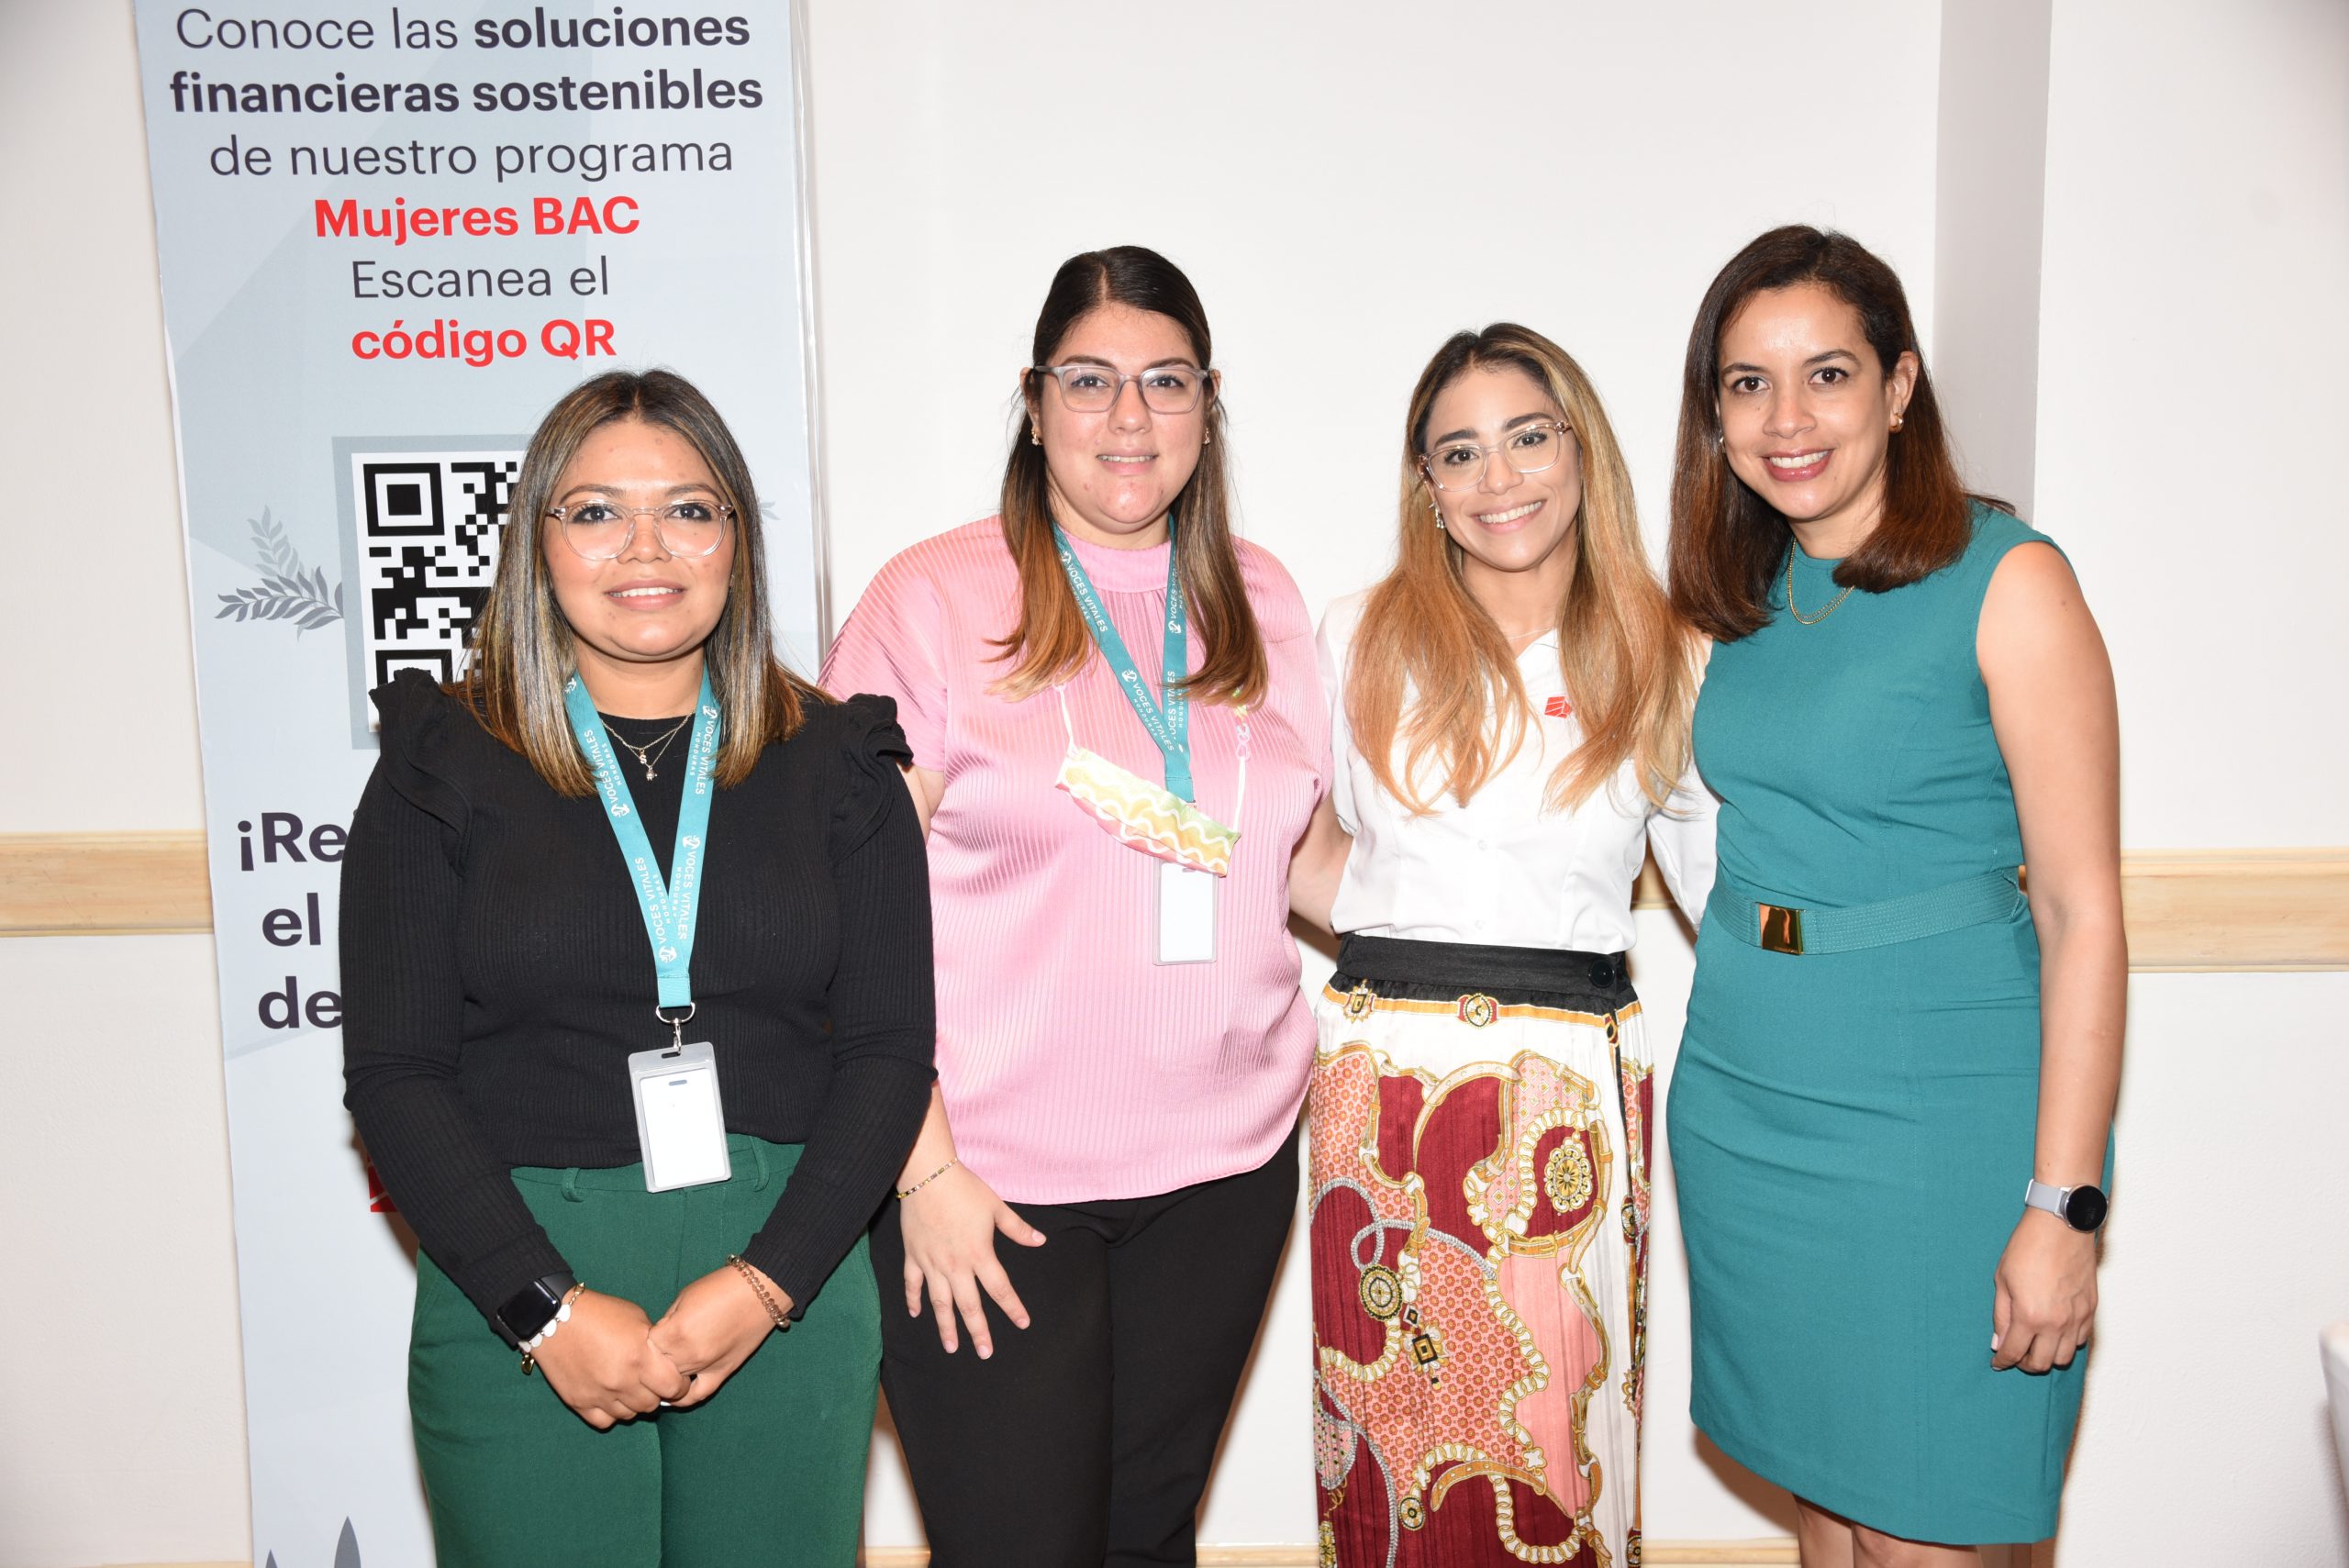 BAC lanza Programa de Mentorías Mujeres BAC